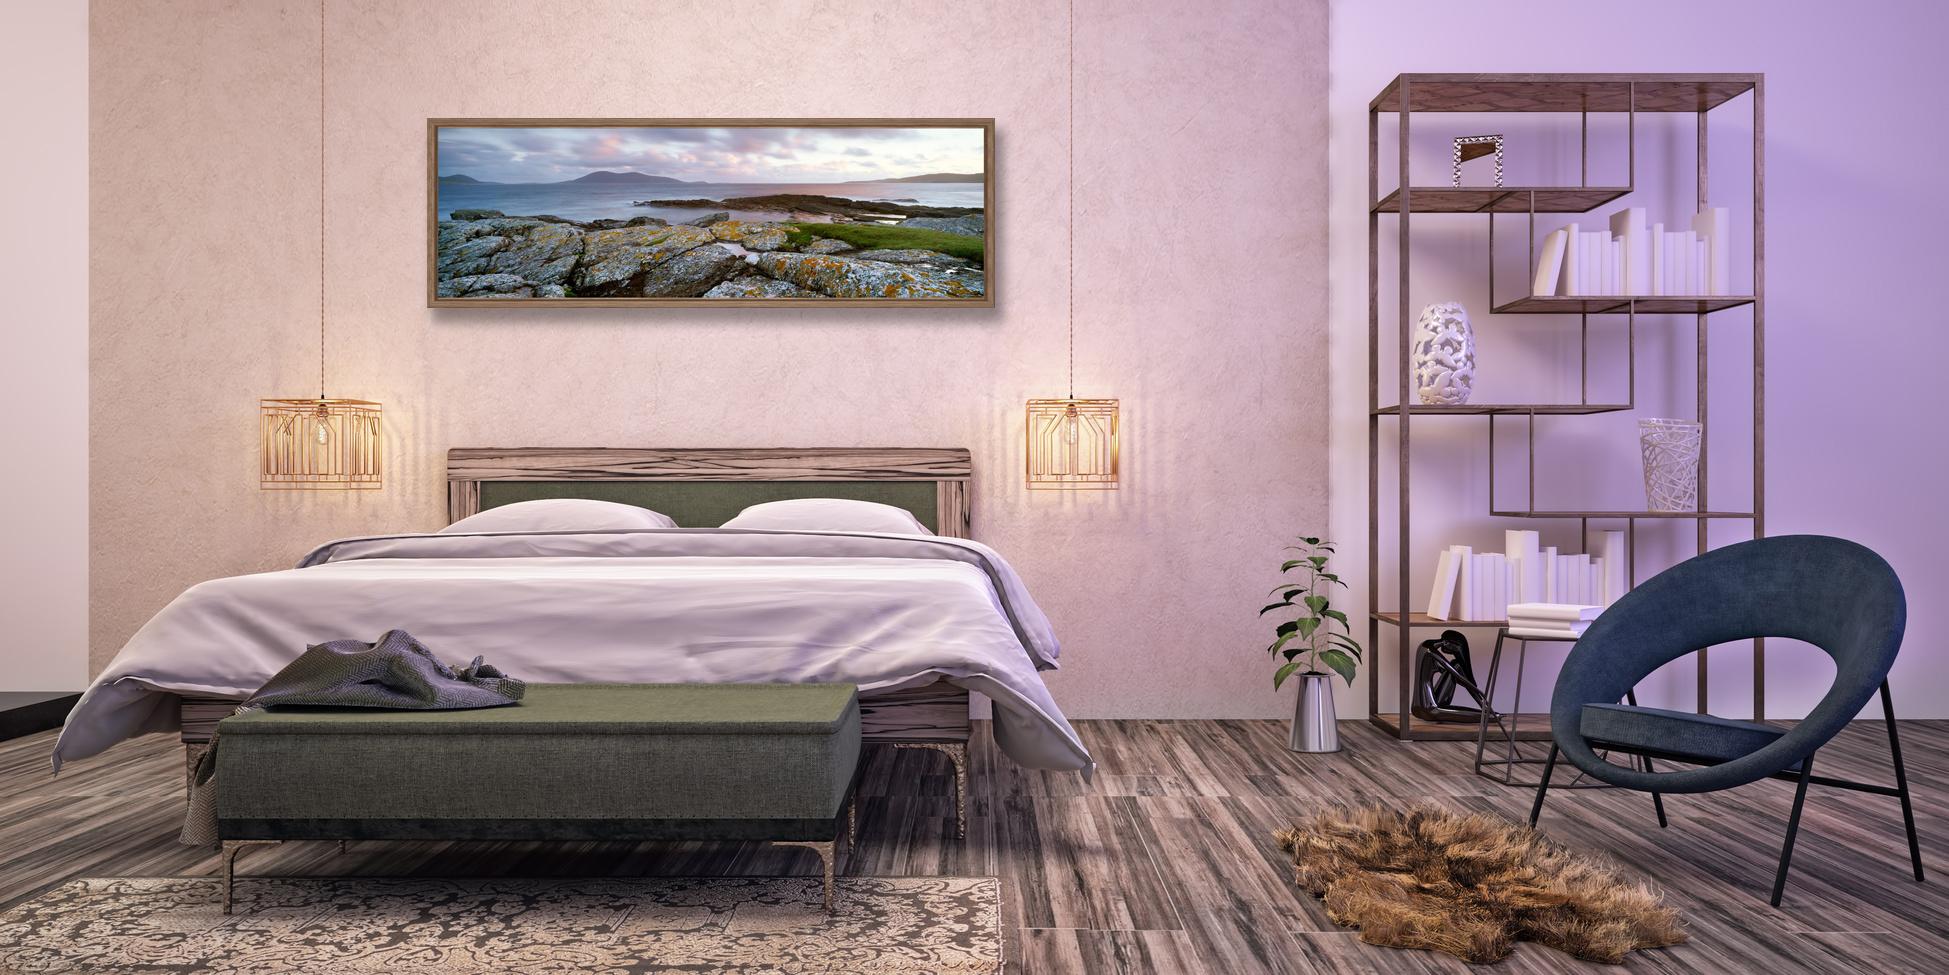 Panorama-Landschaft von Lee Frost im Schlafzimmer #wanddeko ©Bild: Lee Frost. Raum: hd3dsh - Fotolia